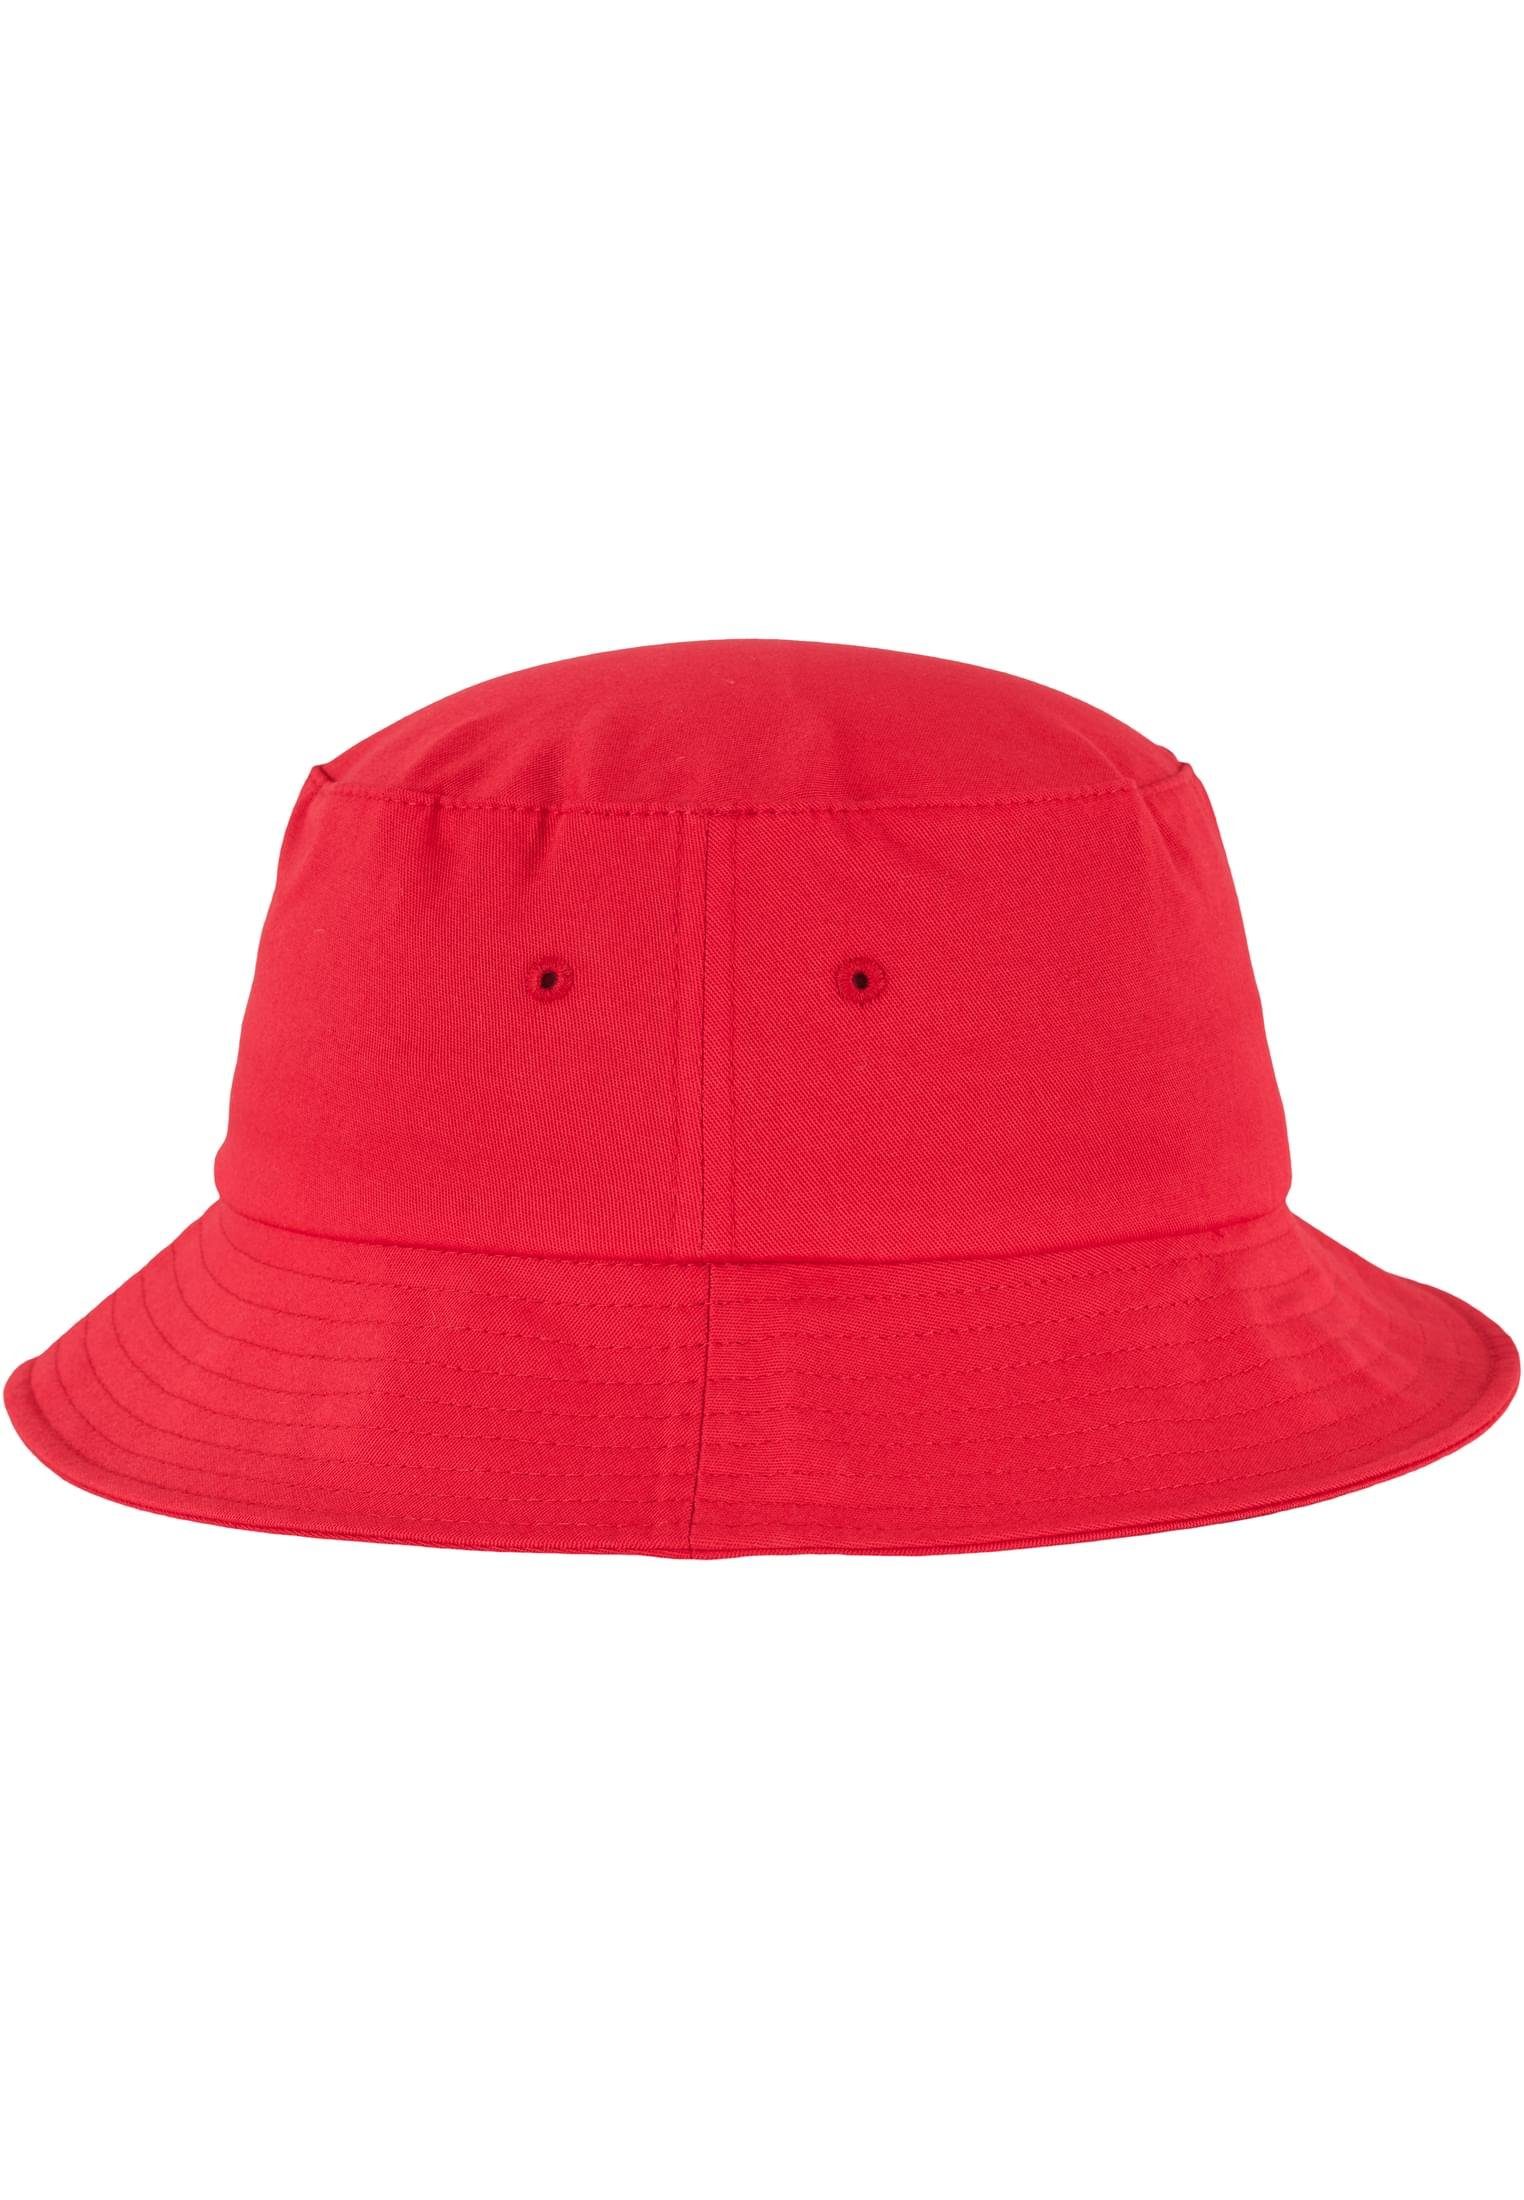 Flexfit Flex Hat red Twill Cap Bucket Cotton Accessoires Flexfit